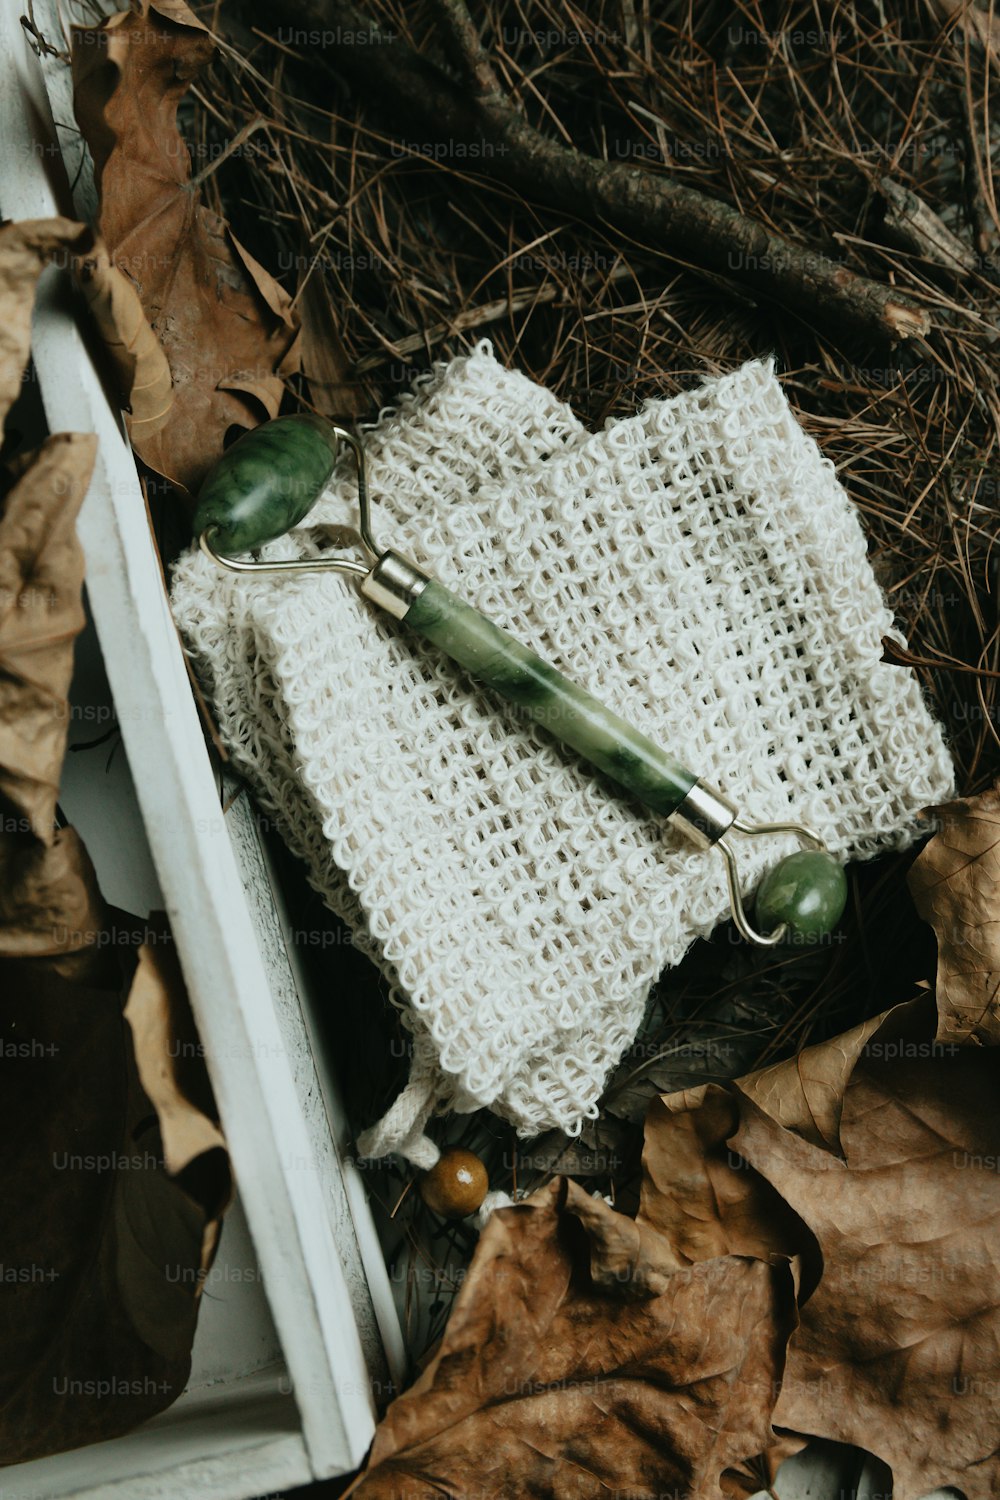 une paire de ciseaux posée sur un objet tricoté